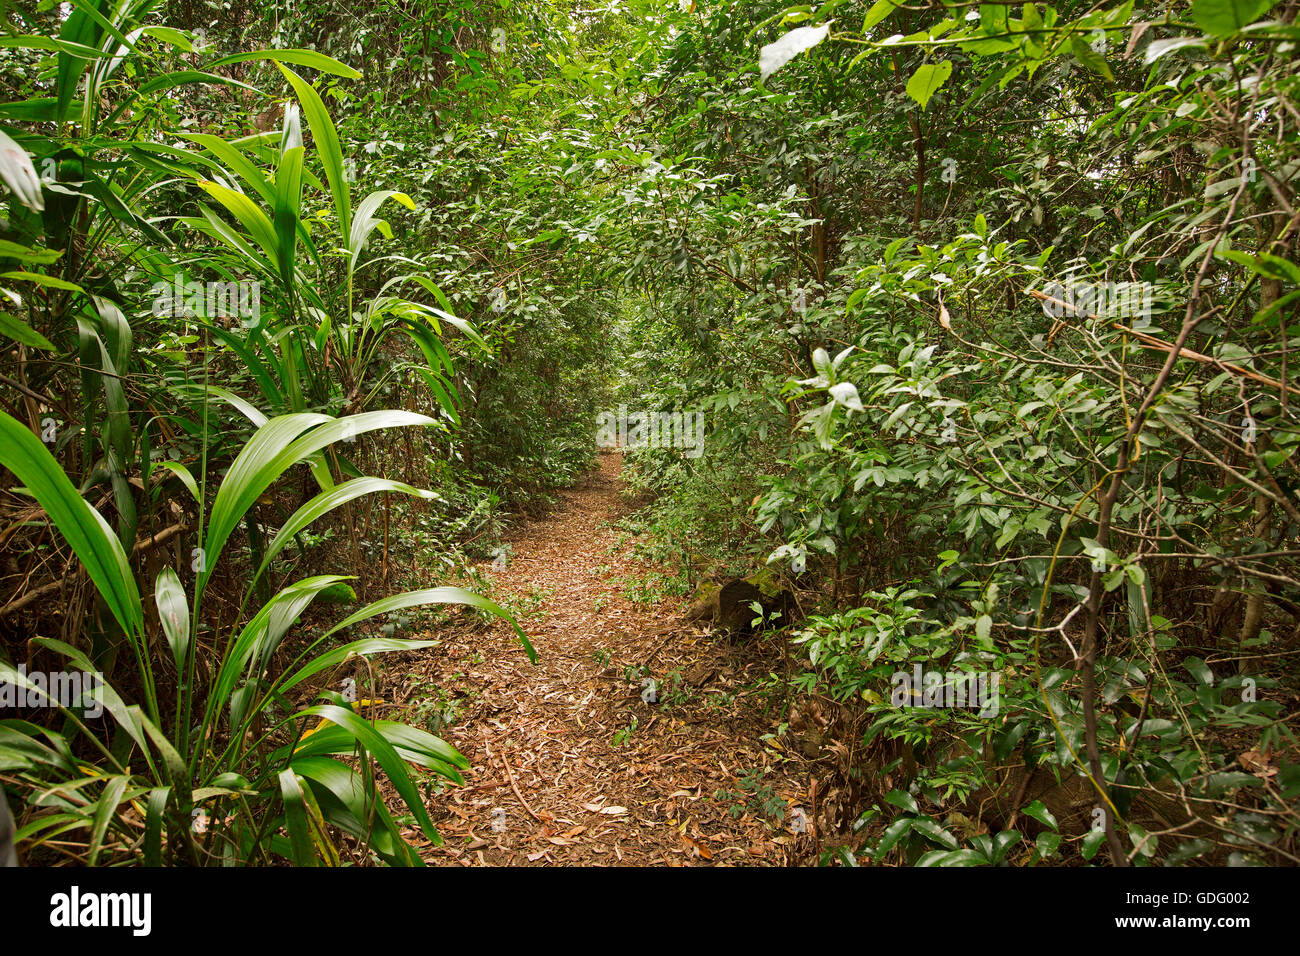 Piste de marche étroite spearing en vert vif dense enchevêtrement de la végétation en sous-tropical rainforest / Jungle en Australie Banque D'Images